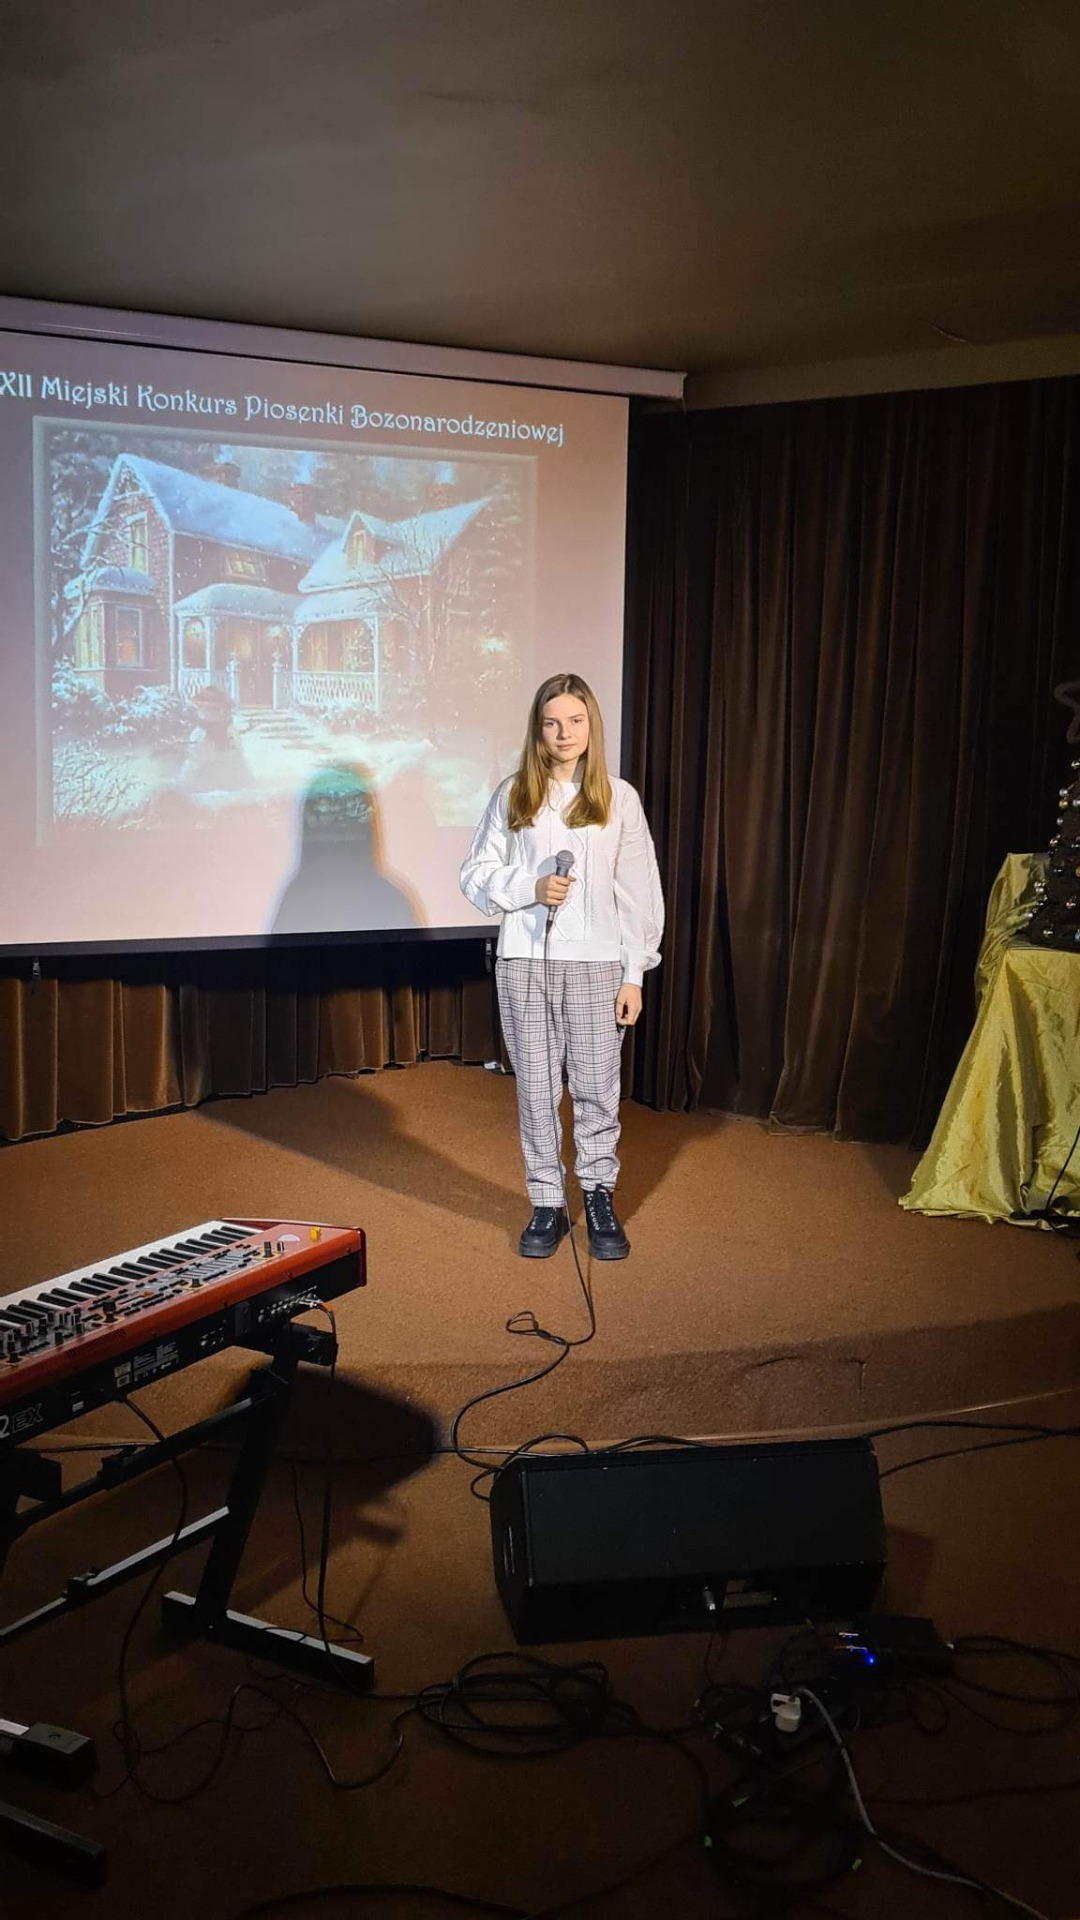 Dziewczyna w białym sweterku i spodniach w kratkę stoi na scenie. W ręku trzyma mikrofon. W tle widoczna dekoracja: prezentacja z motywami świątecznymi, choinka, pianino.